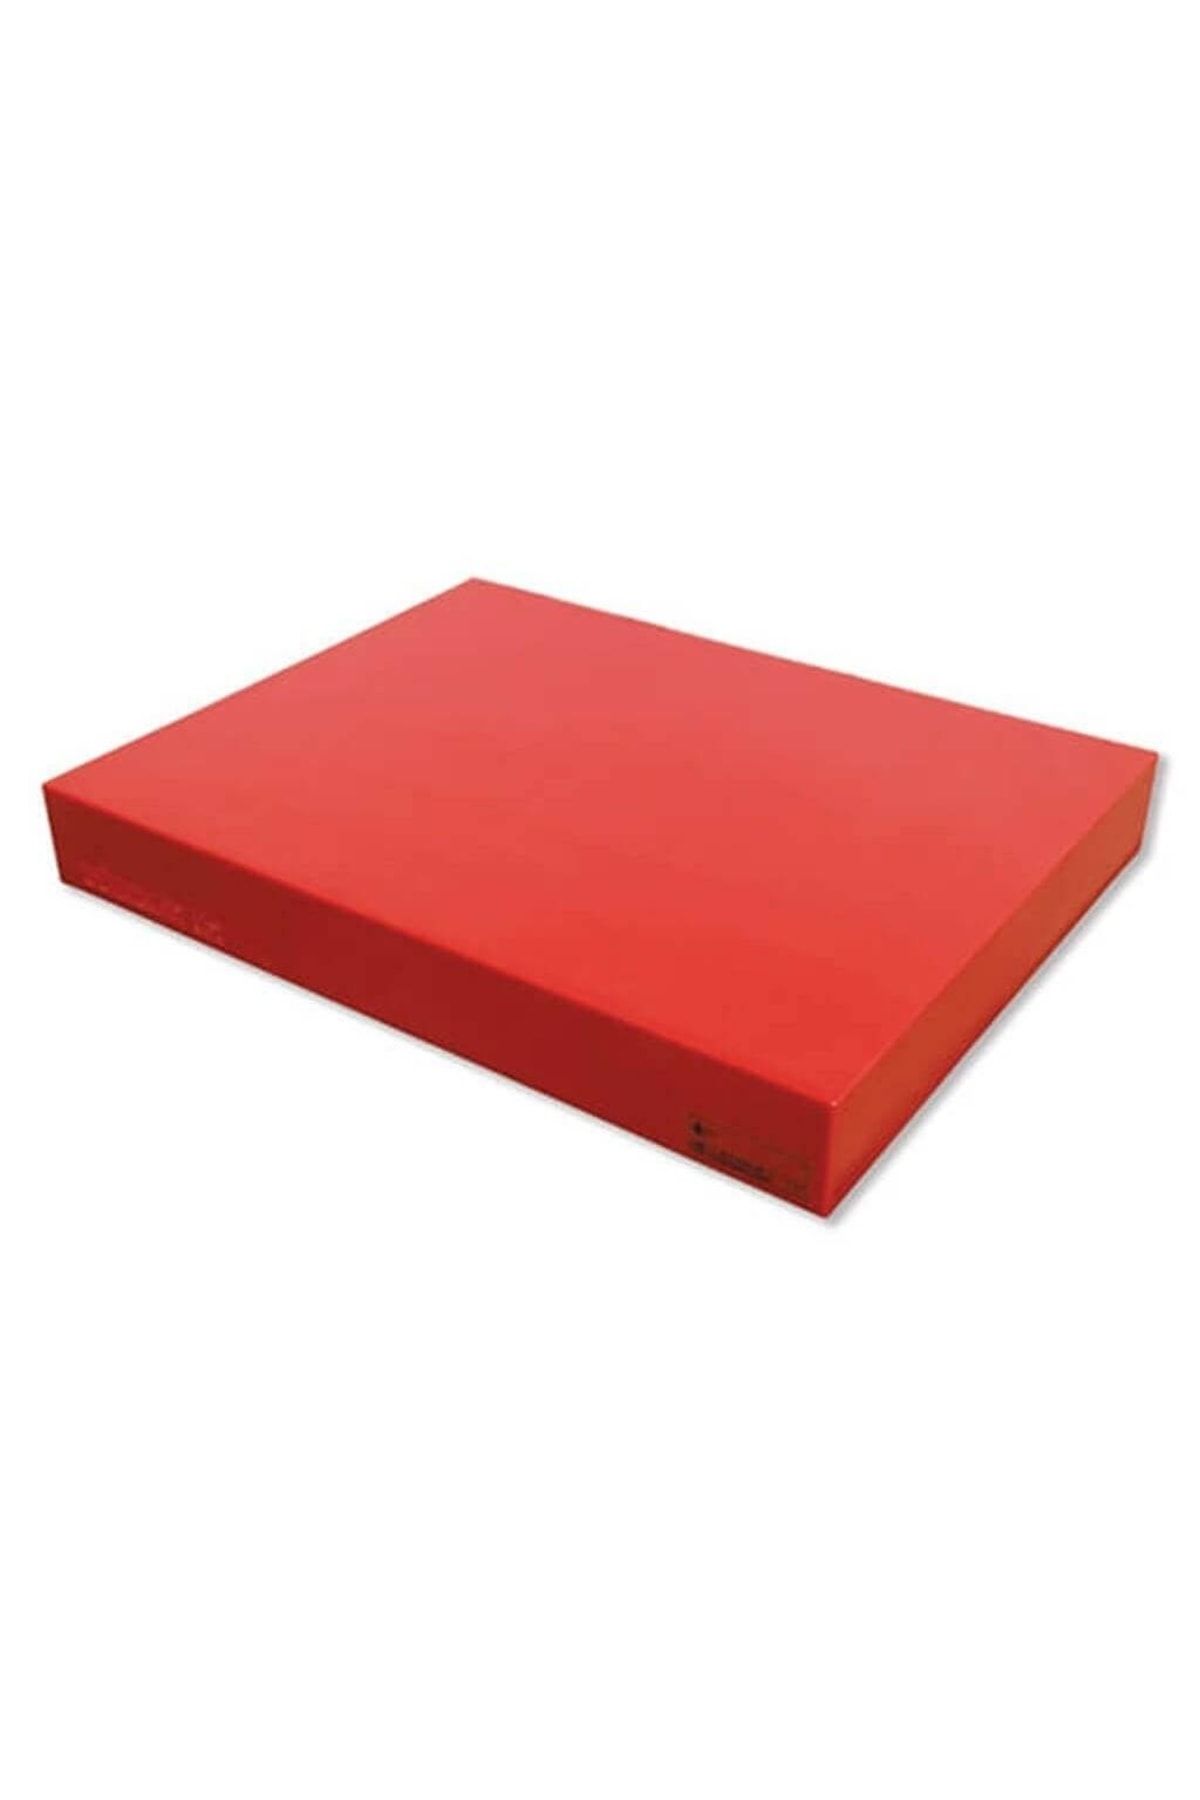 Türkay Polietilen Et Kütüğü-satırlık-50x50x8-kırmızı